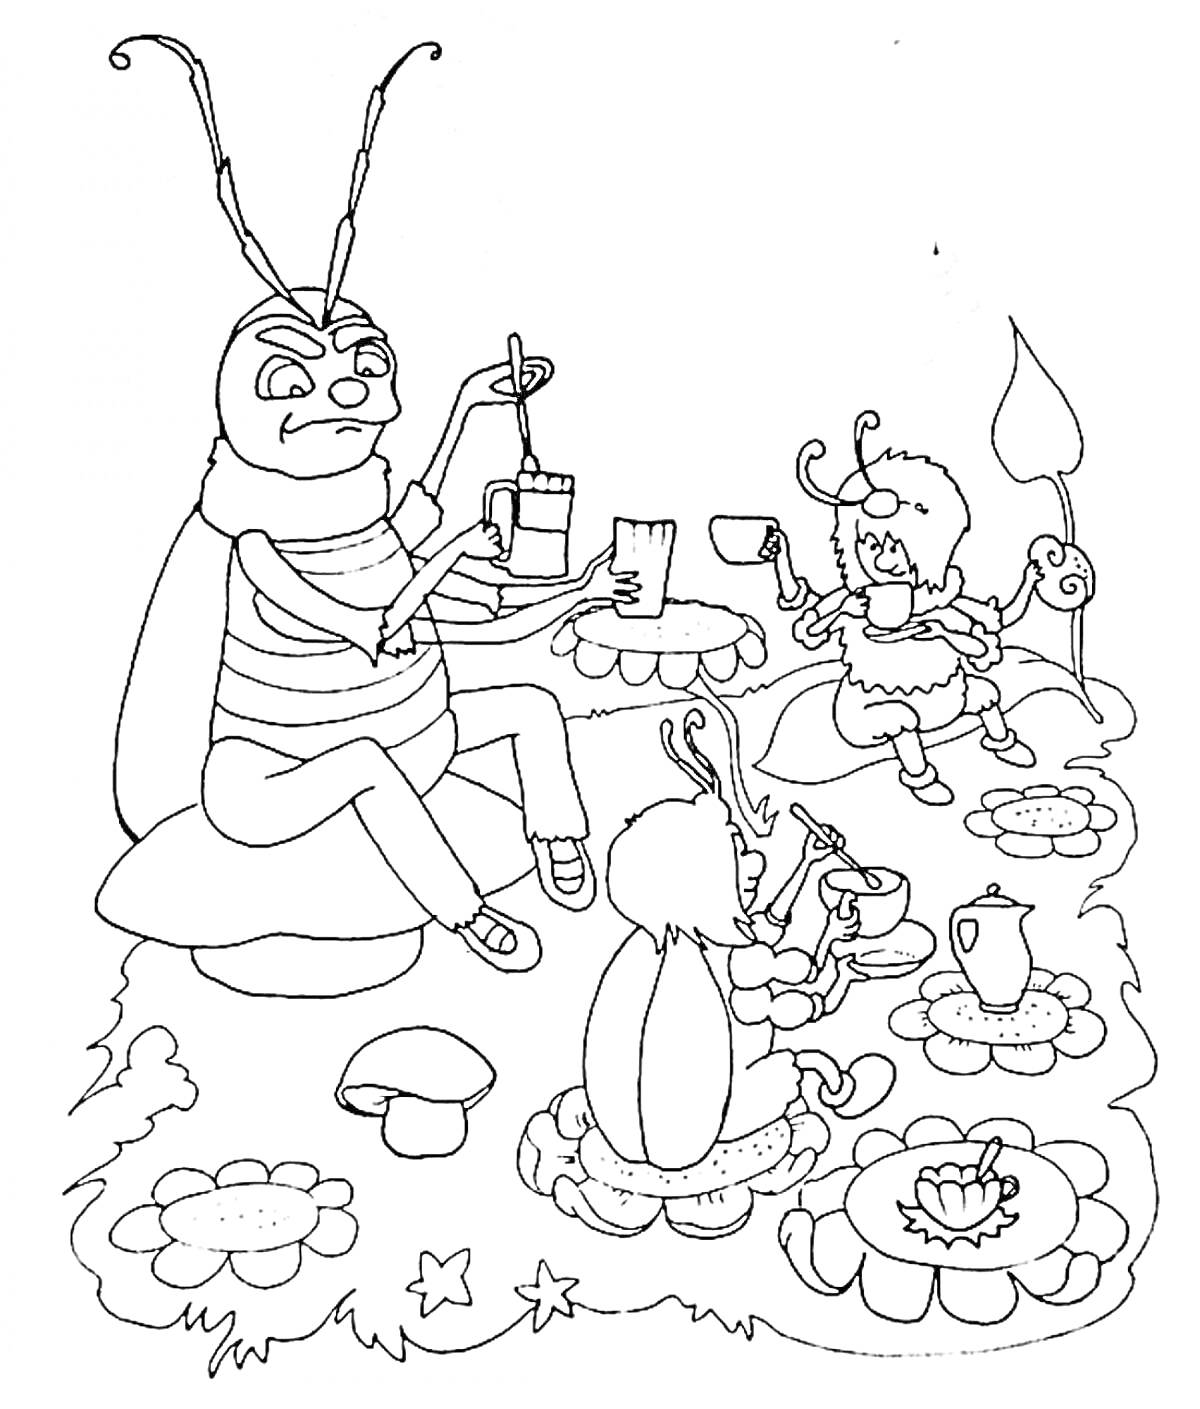 Муха-Цокотуха с друзьями на пикнике - муха, муравей и другой жук сидят за столами с цветочными скатертями, угощаются чаем и пирогом, вокруг растут грибы и цветы.